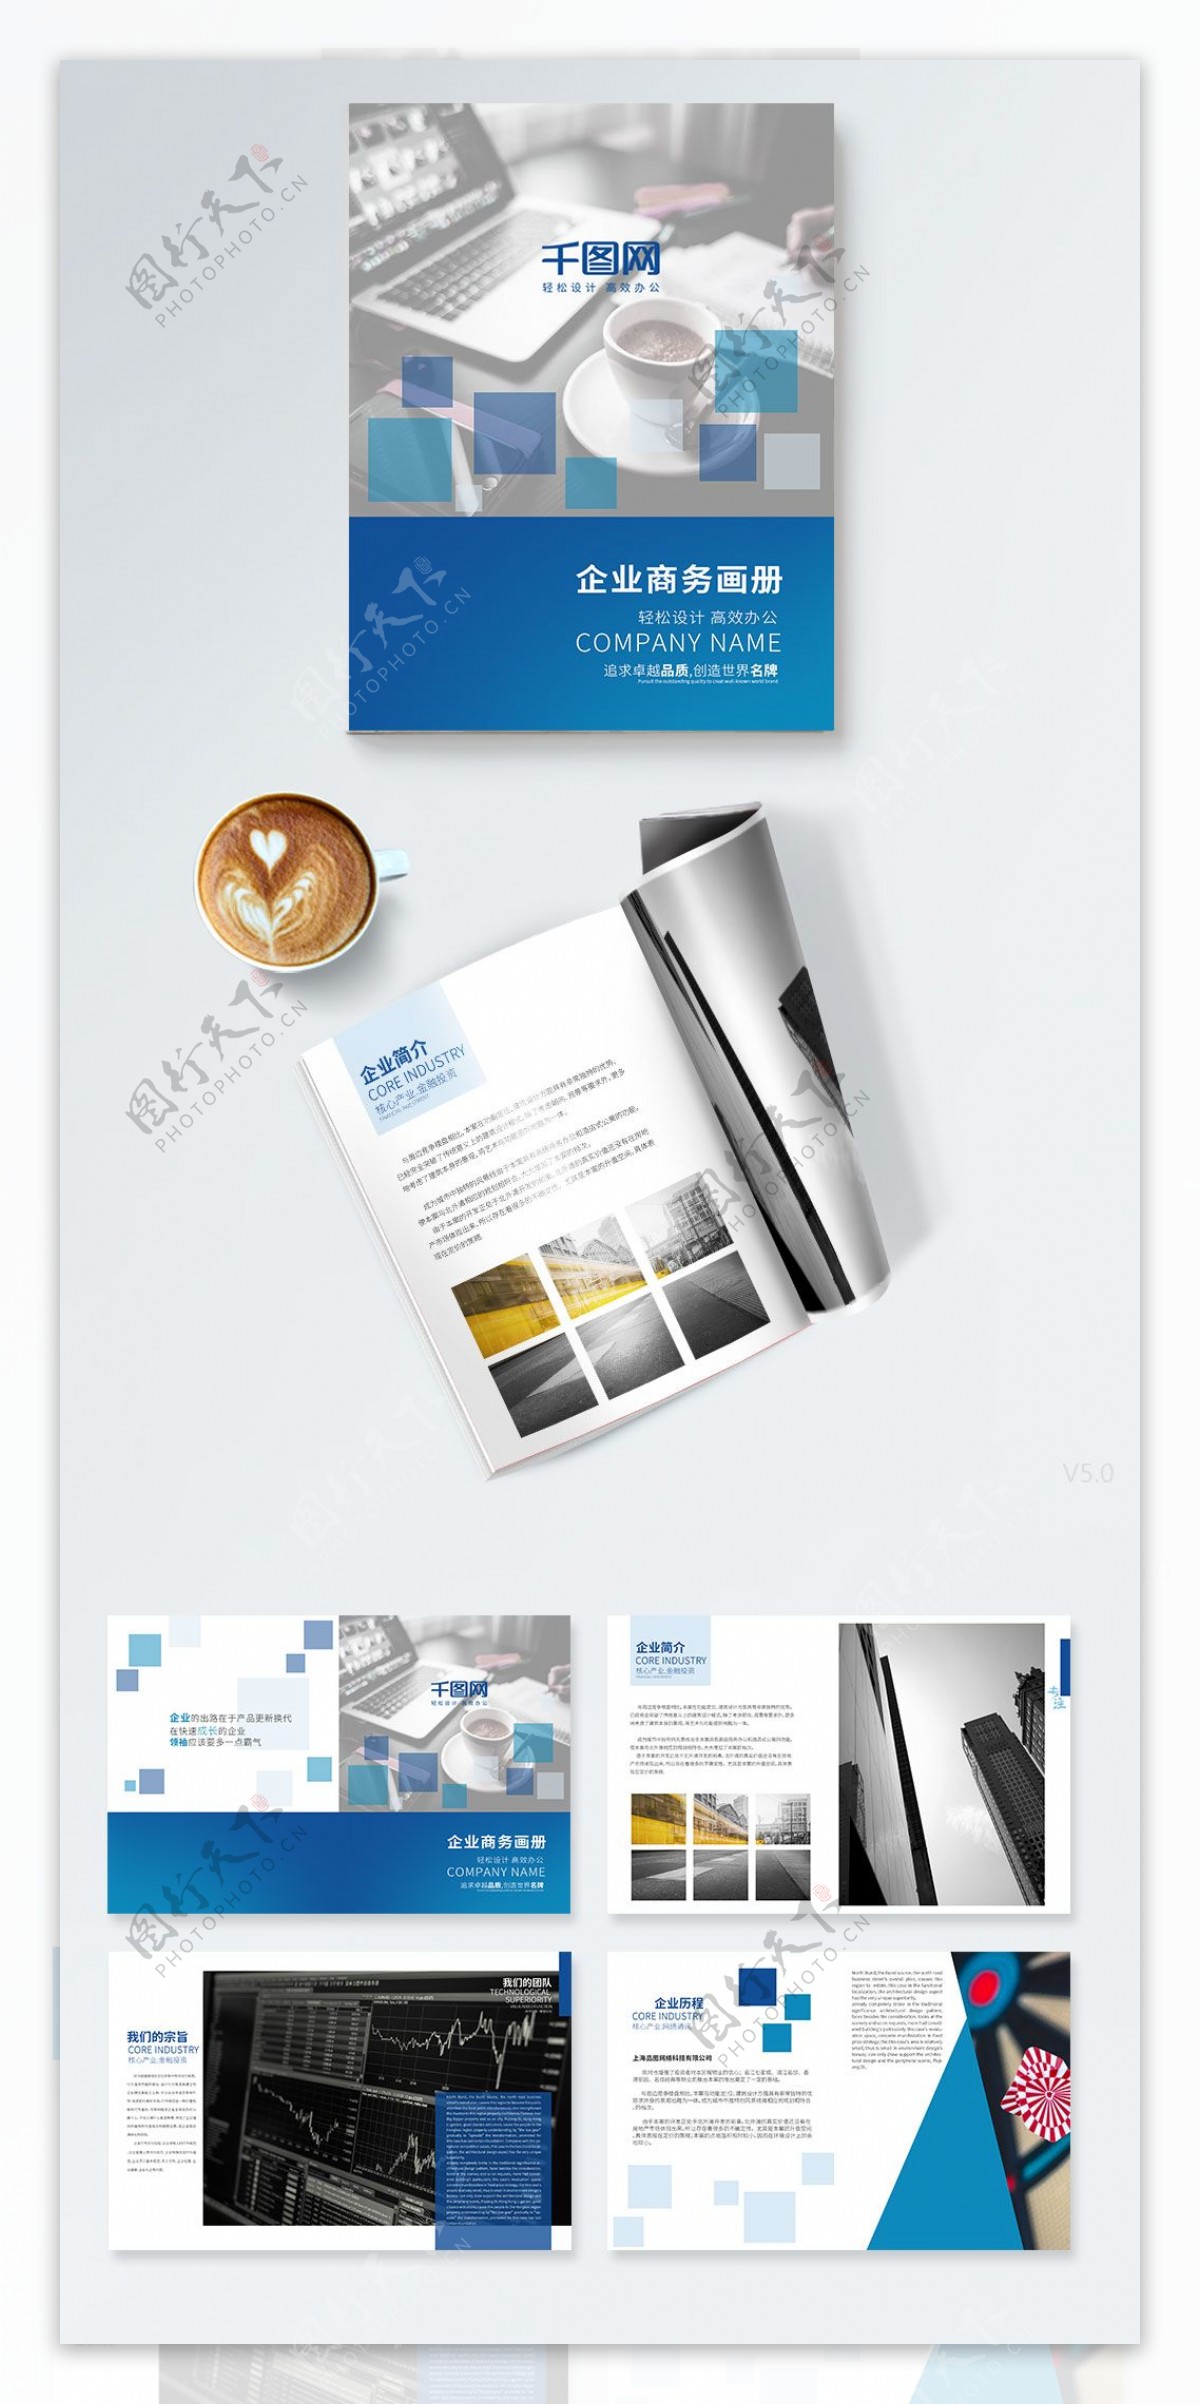 蓝色科技商务画册设计PSD模板